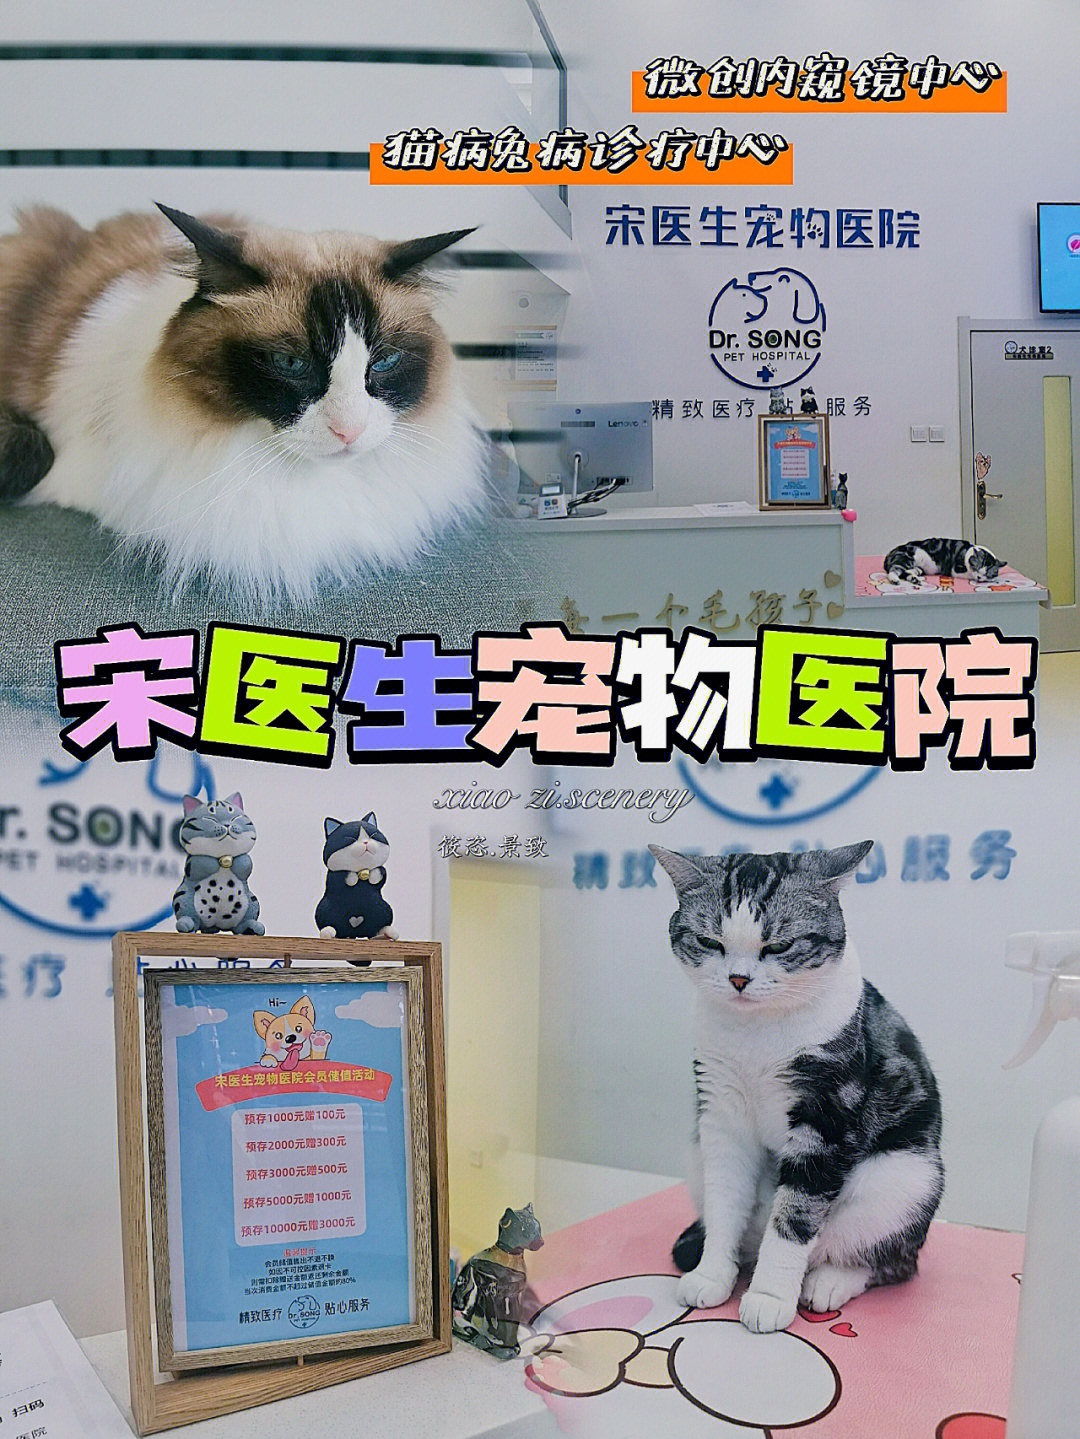 宠物医院_宠物在线医院_广州宠物乌龟的医院